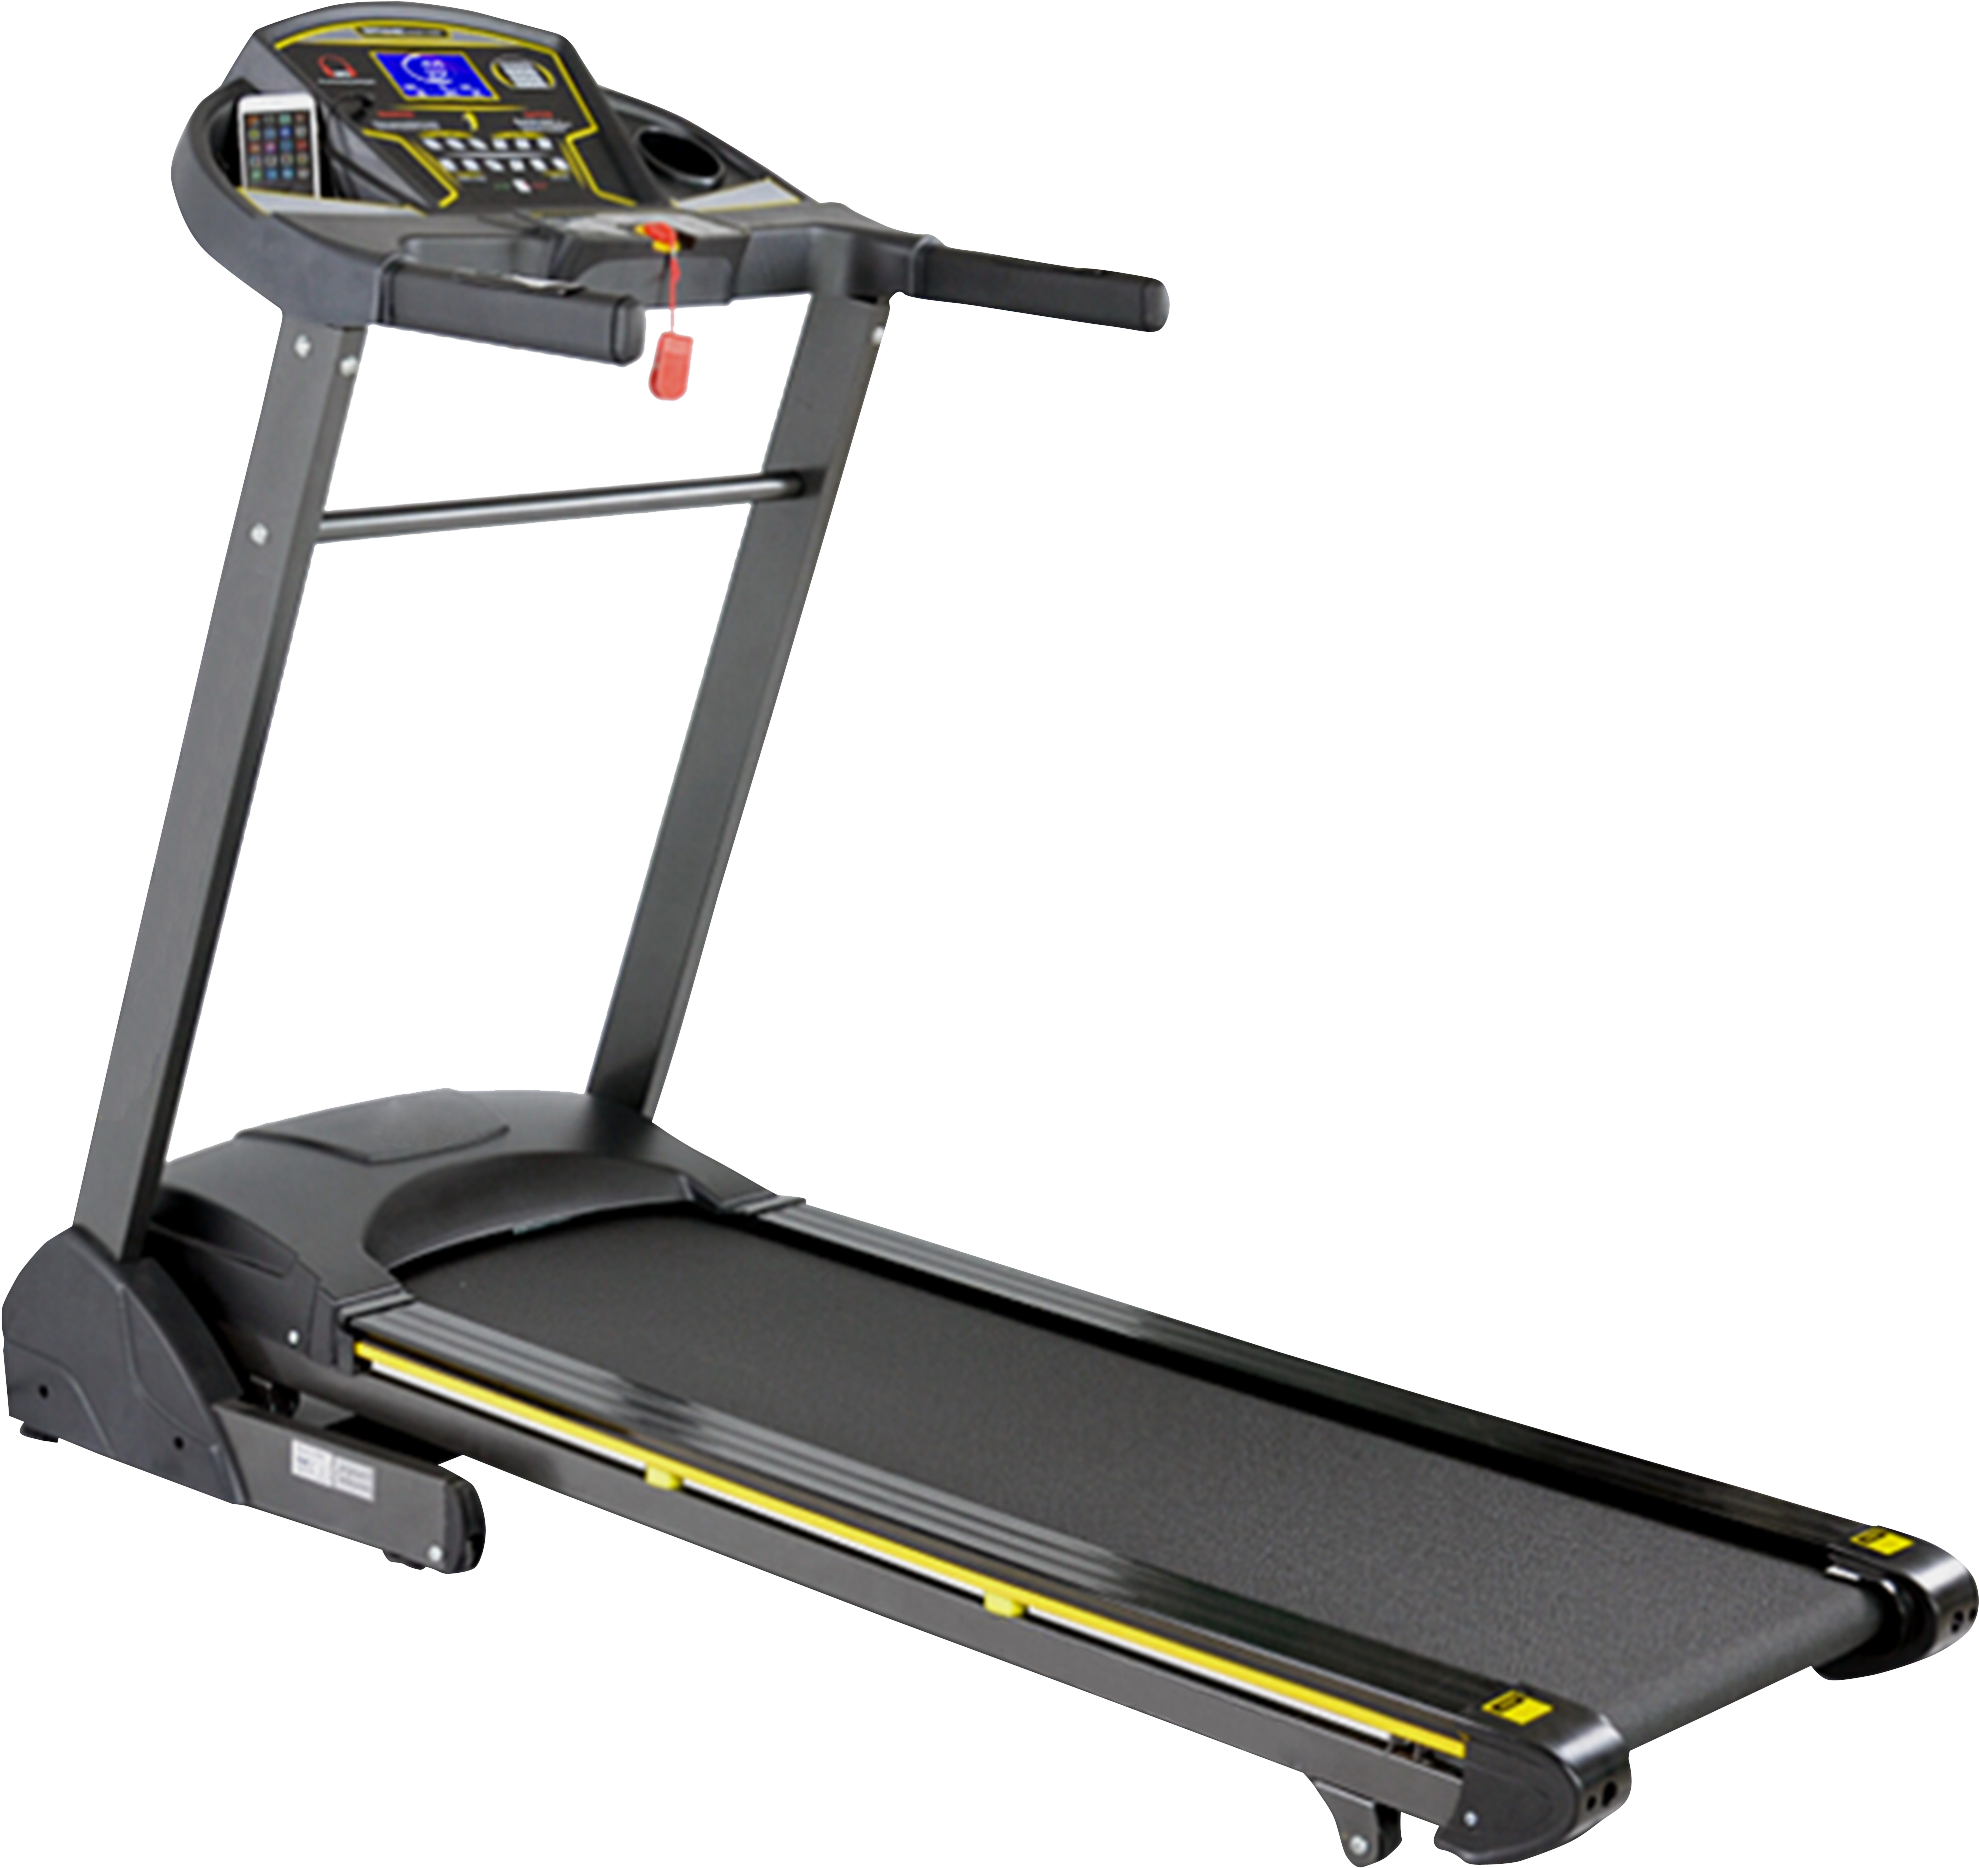 T 215 Treadmill - Treadmill Price In Sri Lanka (2137x1944), Png Download